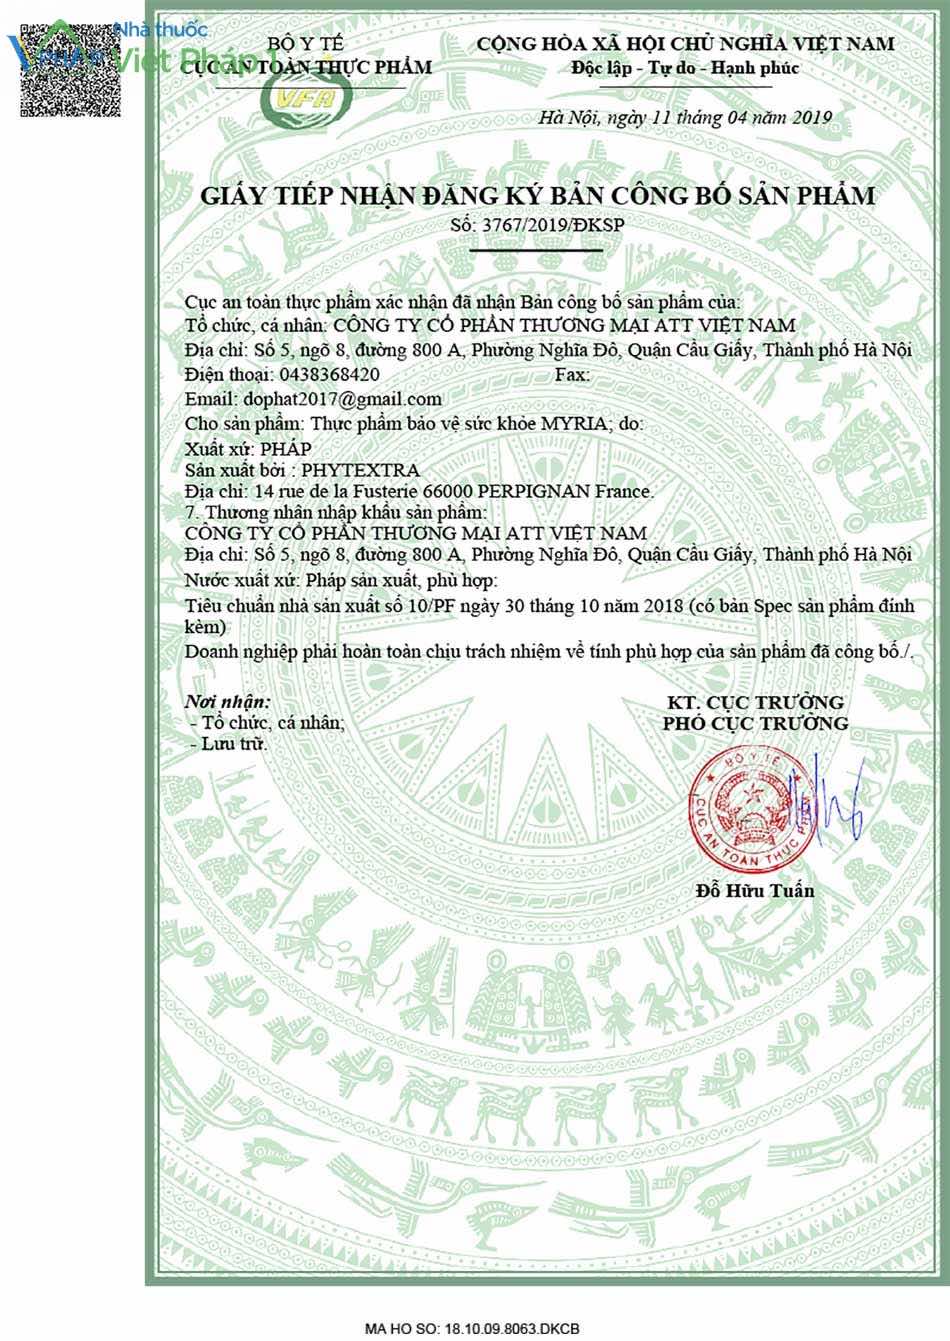 Bộ Y Tế cấp giấy tiếp nhận đăng ký bản công bố sản phẩm Myria